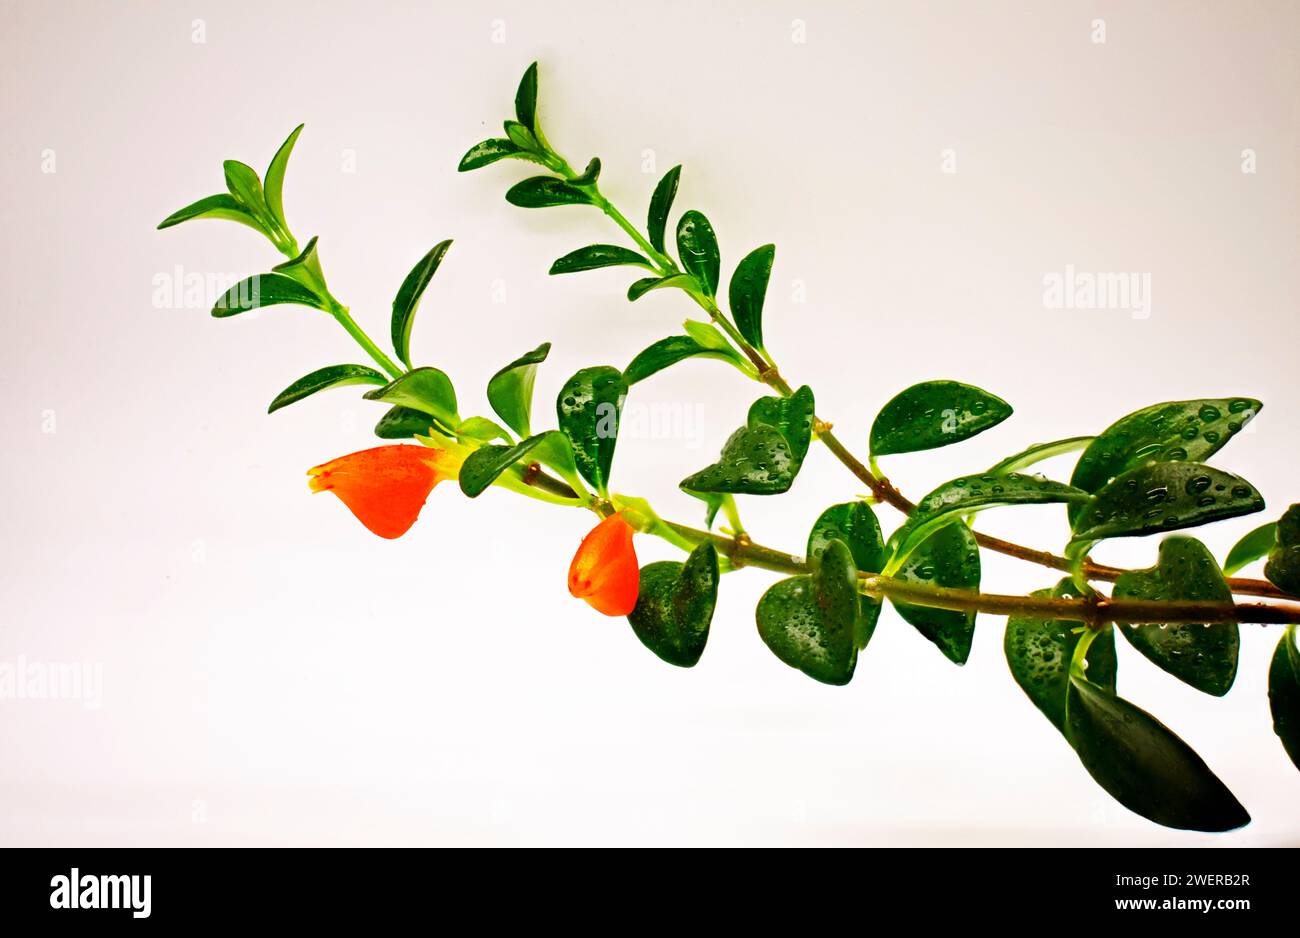 Mettere a fuoco l'immagine impilata del ramo della pianta del pesce rosso (Nematanthus Gregarius), con fiori rossi, foglie verdi scure e steli, su uno sfondo avorio Foto Stock